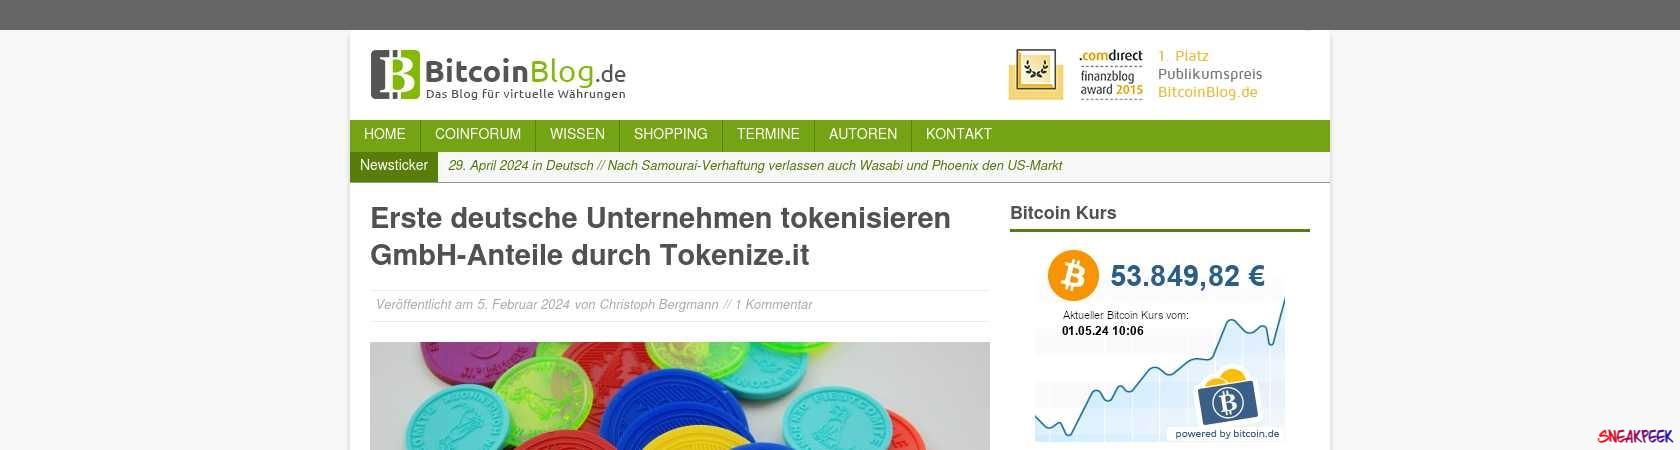 Read the full Article:  ⭲ Erste deutsche Unternehmen tokenisieren GmbH-Anteile durch Tokenized.it